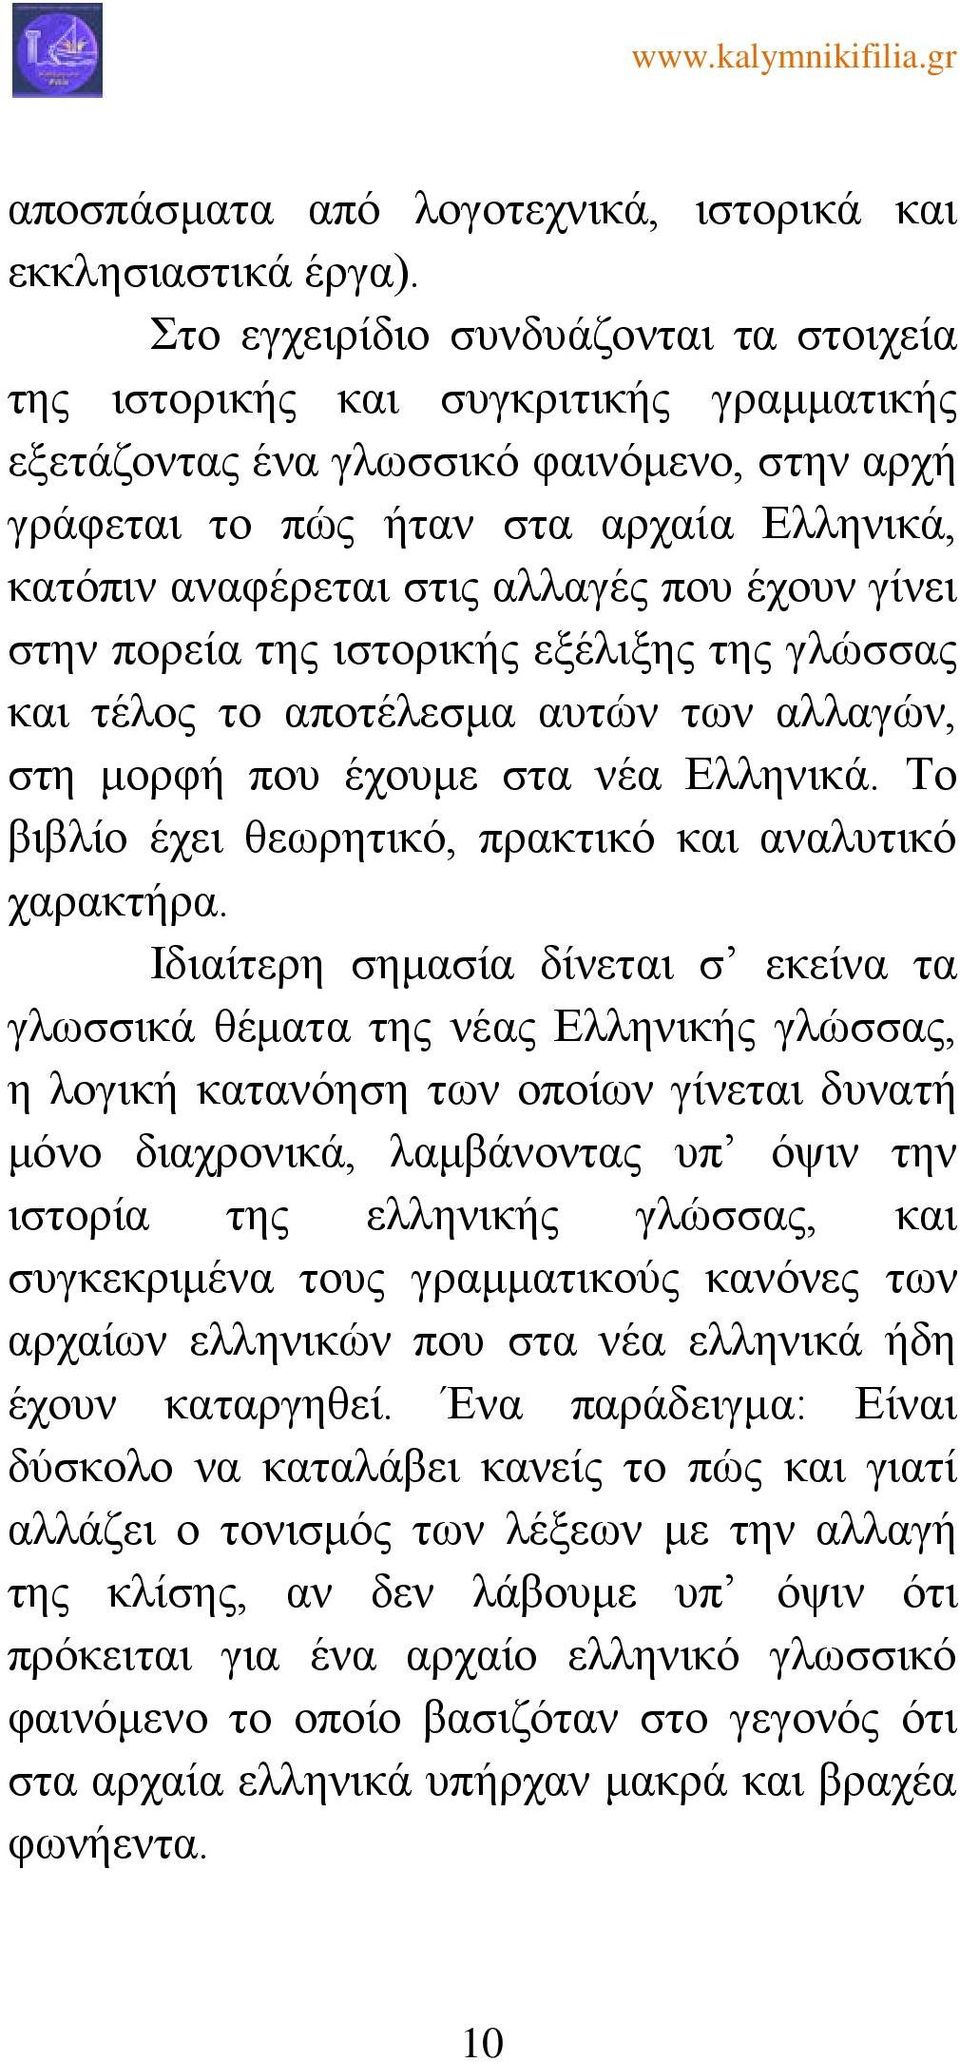 αλλαγές που έχουν γίνει στην πορεία της ιστορικής εξέλιξης της γλώσσας και τέλος το αποτέλεσμα αυτών των αλλαγών, στη μορφή που έχουμε στα νέα Ελληνικά.